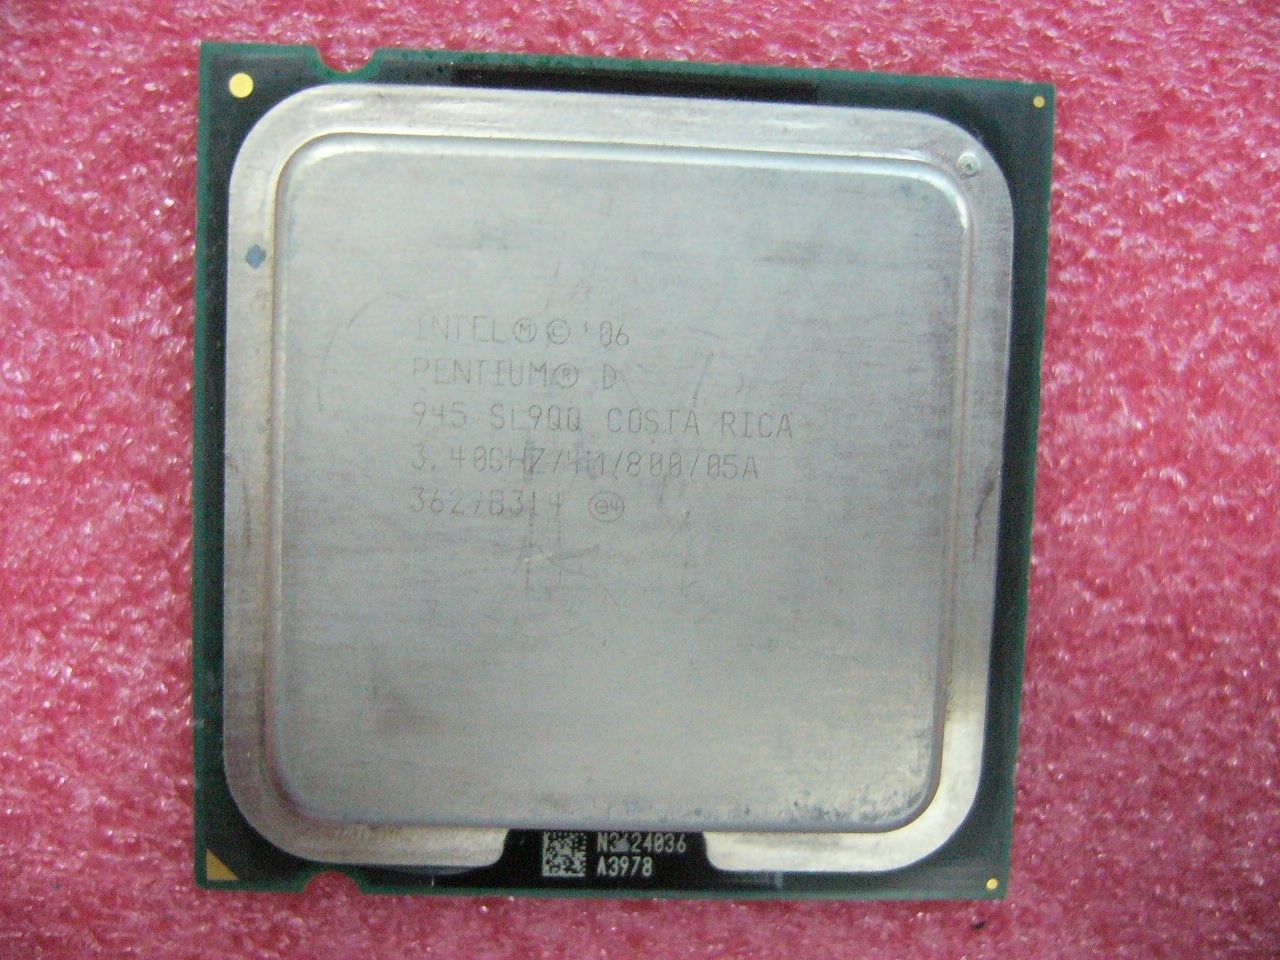 INTEL Pentium D 945 CPU 3.4GHz 4MB/800Mhz LGA775 SL9QQ SL9QB